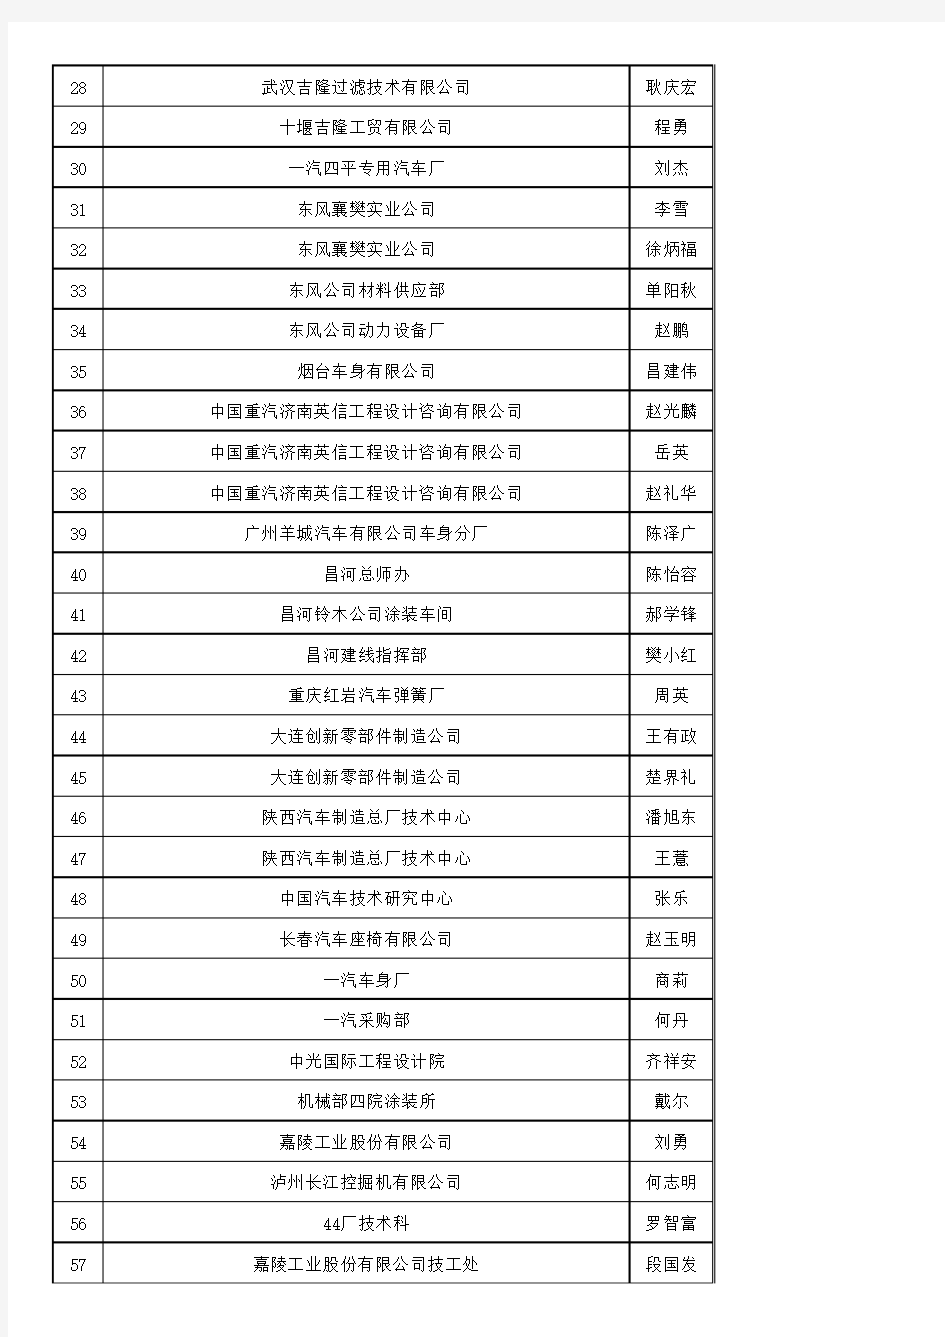 最新版中国汽车整车及零部件企业名录